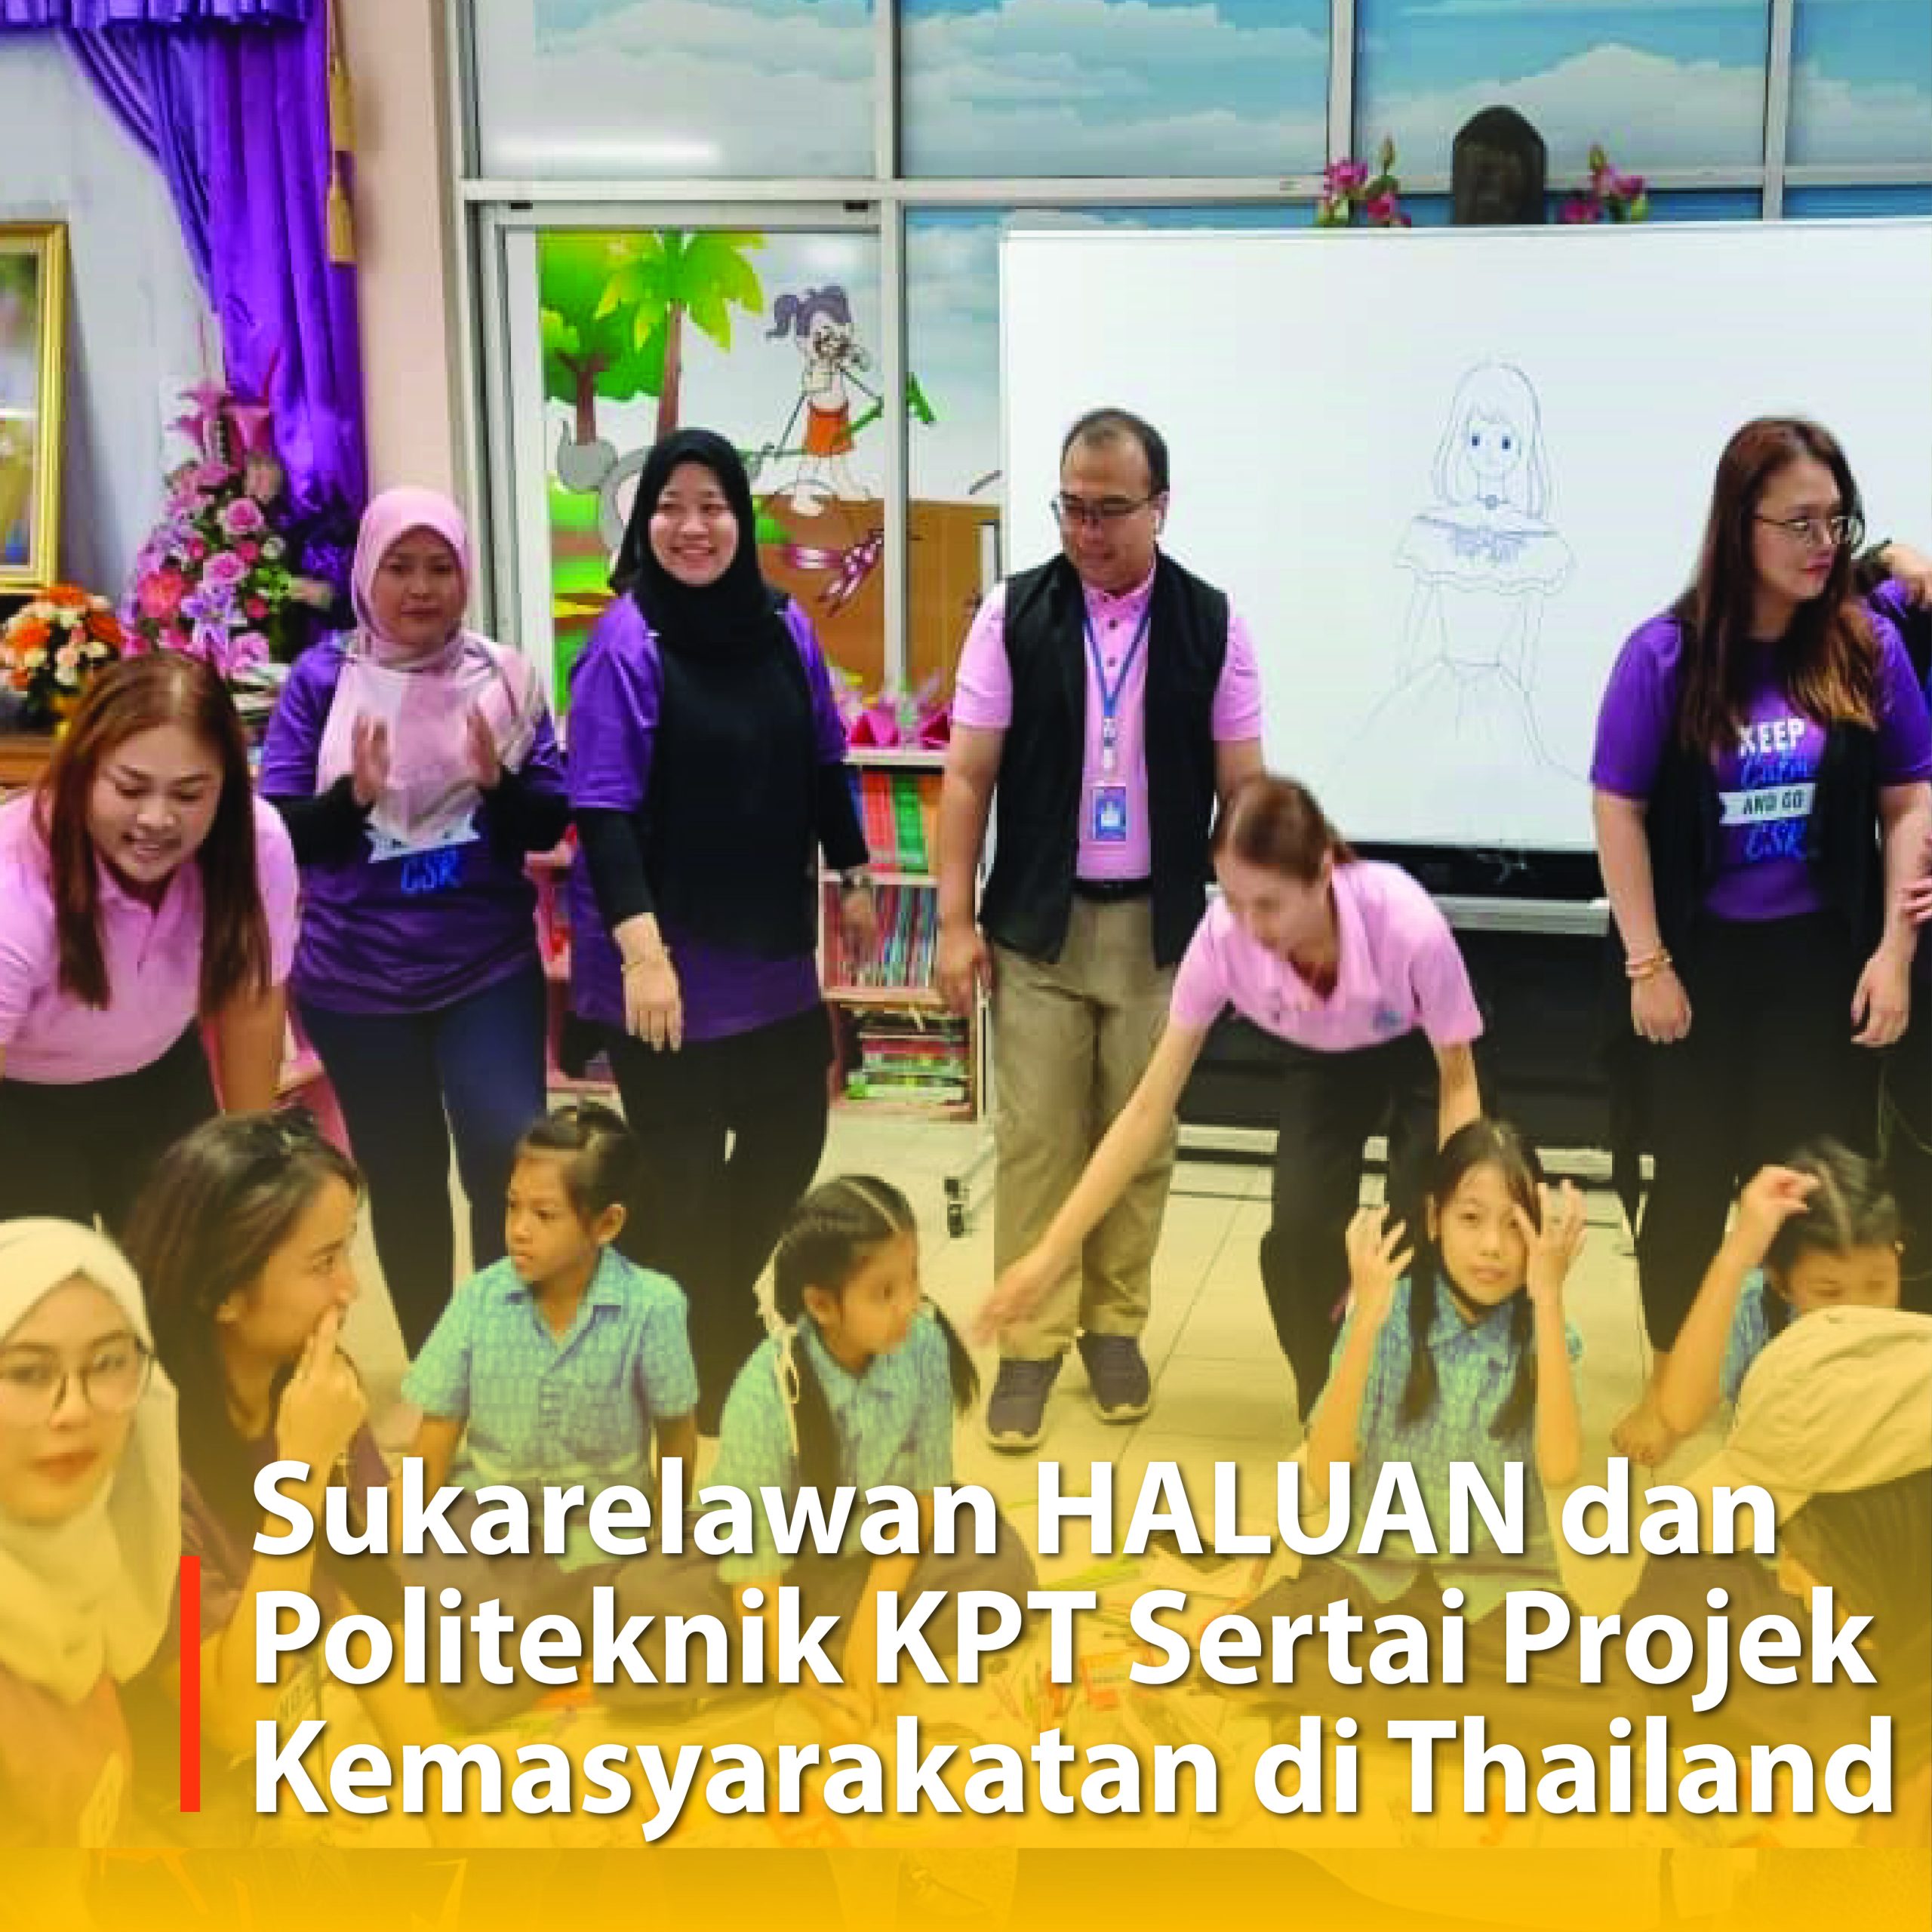 Sukarelawan HALUAN dan Politeknik KPT Sertai Projek Kemasyarakatan di Thailand